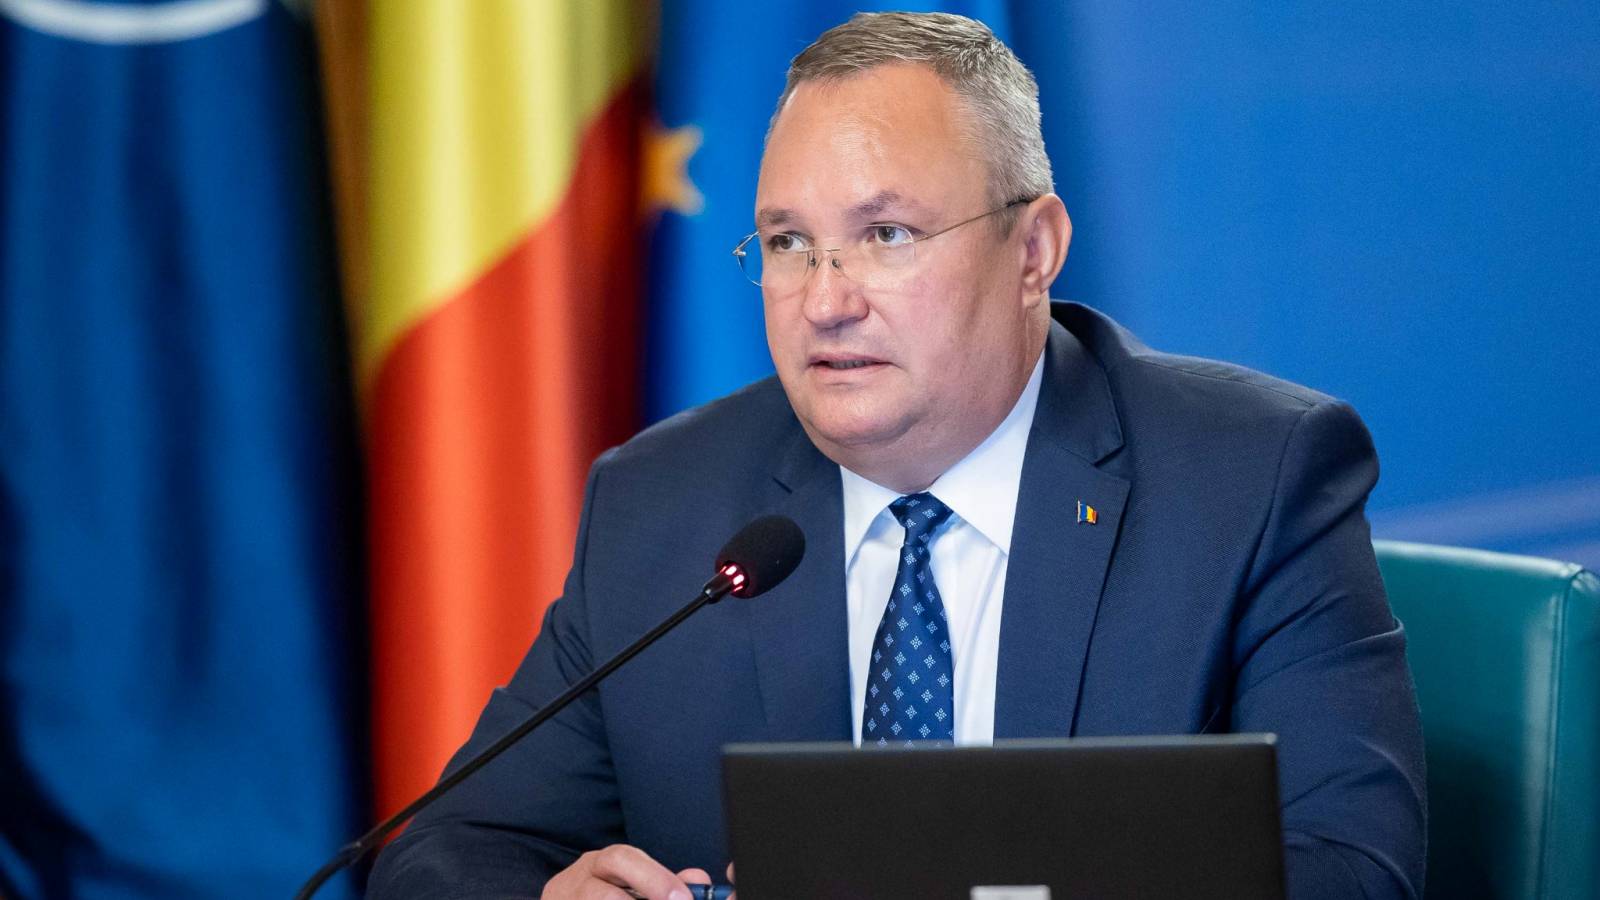 Nicolae Ciuca keskusteli Romaniaan kohdistuvista uhista Naton pääsihteerin kanssa